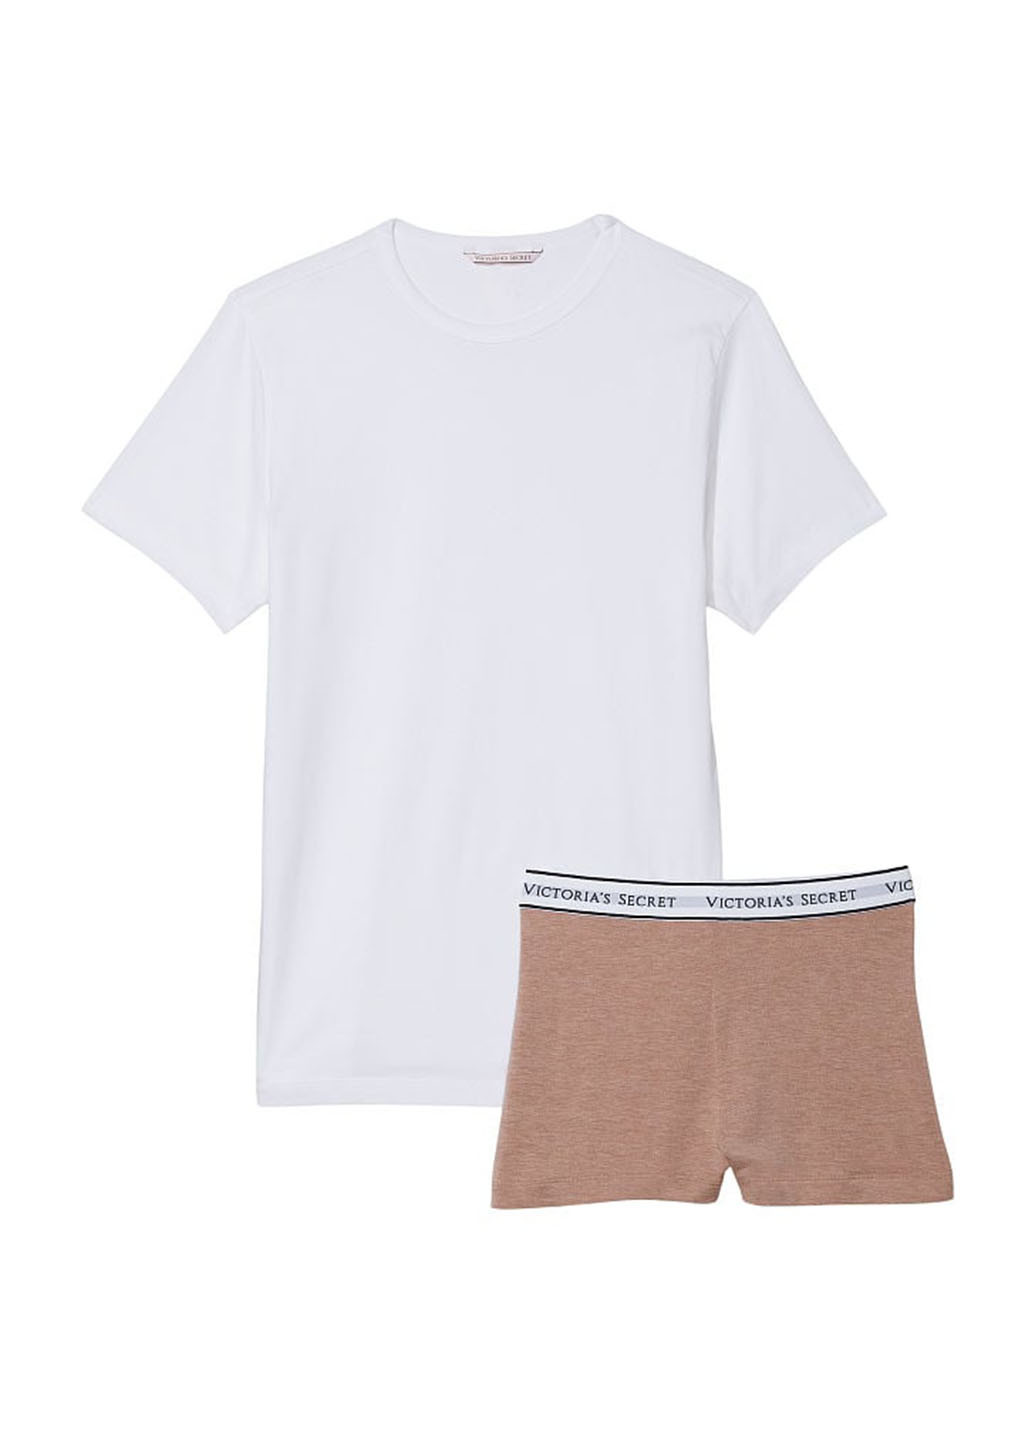 Комбинированная всесезон пижама (футболка. шорты) футболка + шорты Victoria's Secret